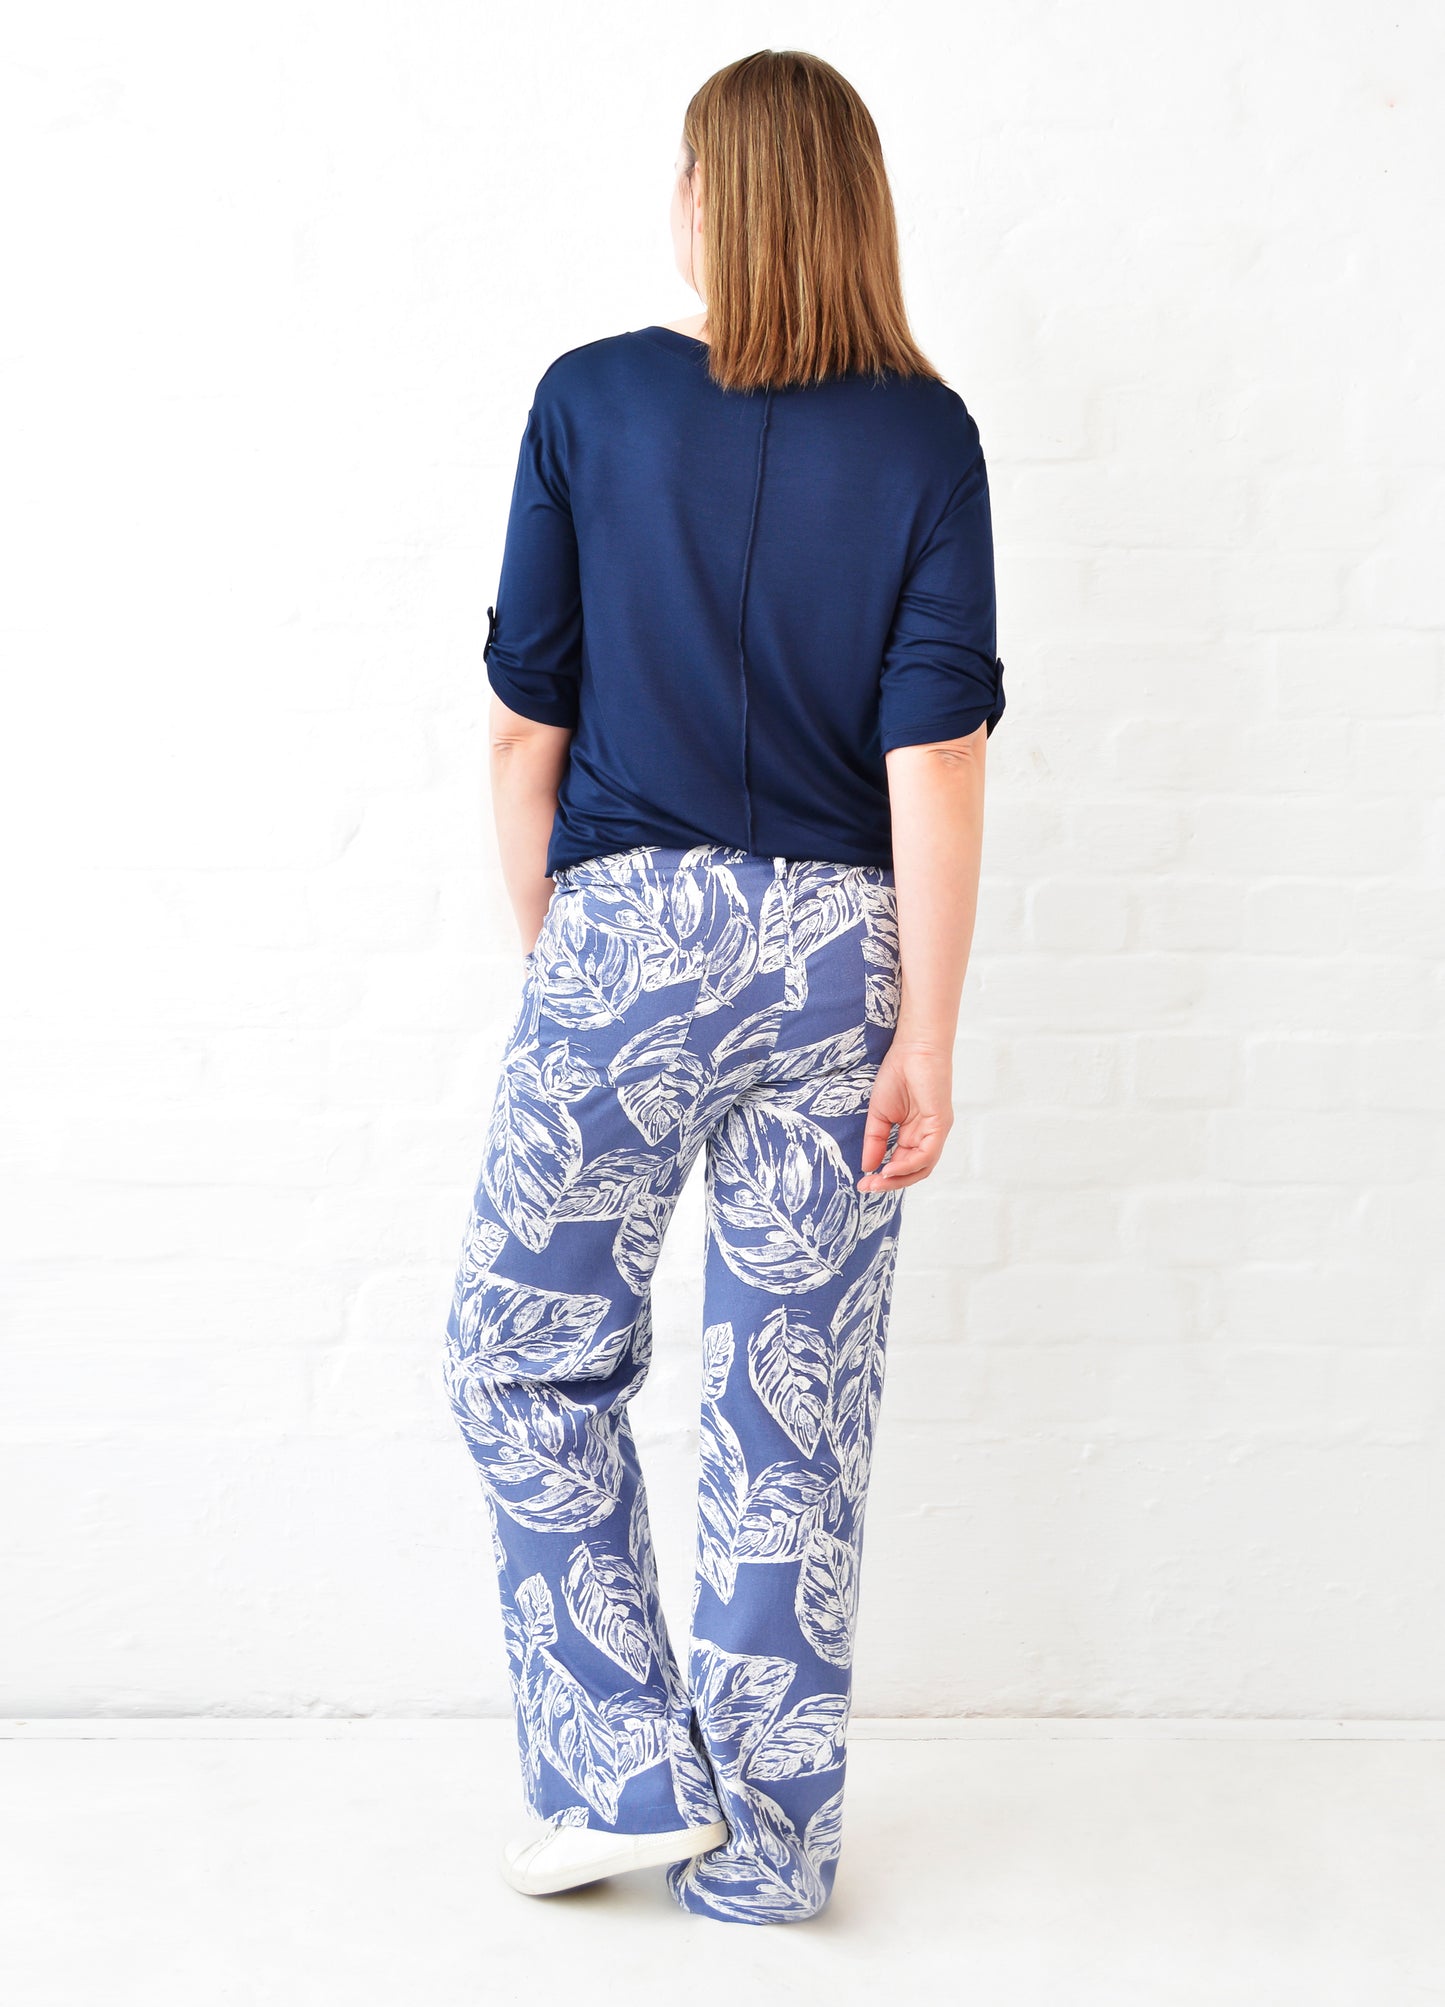 Savannah trousers in indigo Linnea print size 36